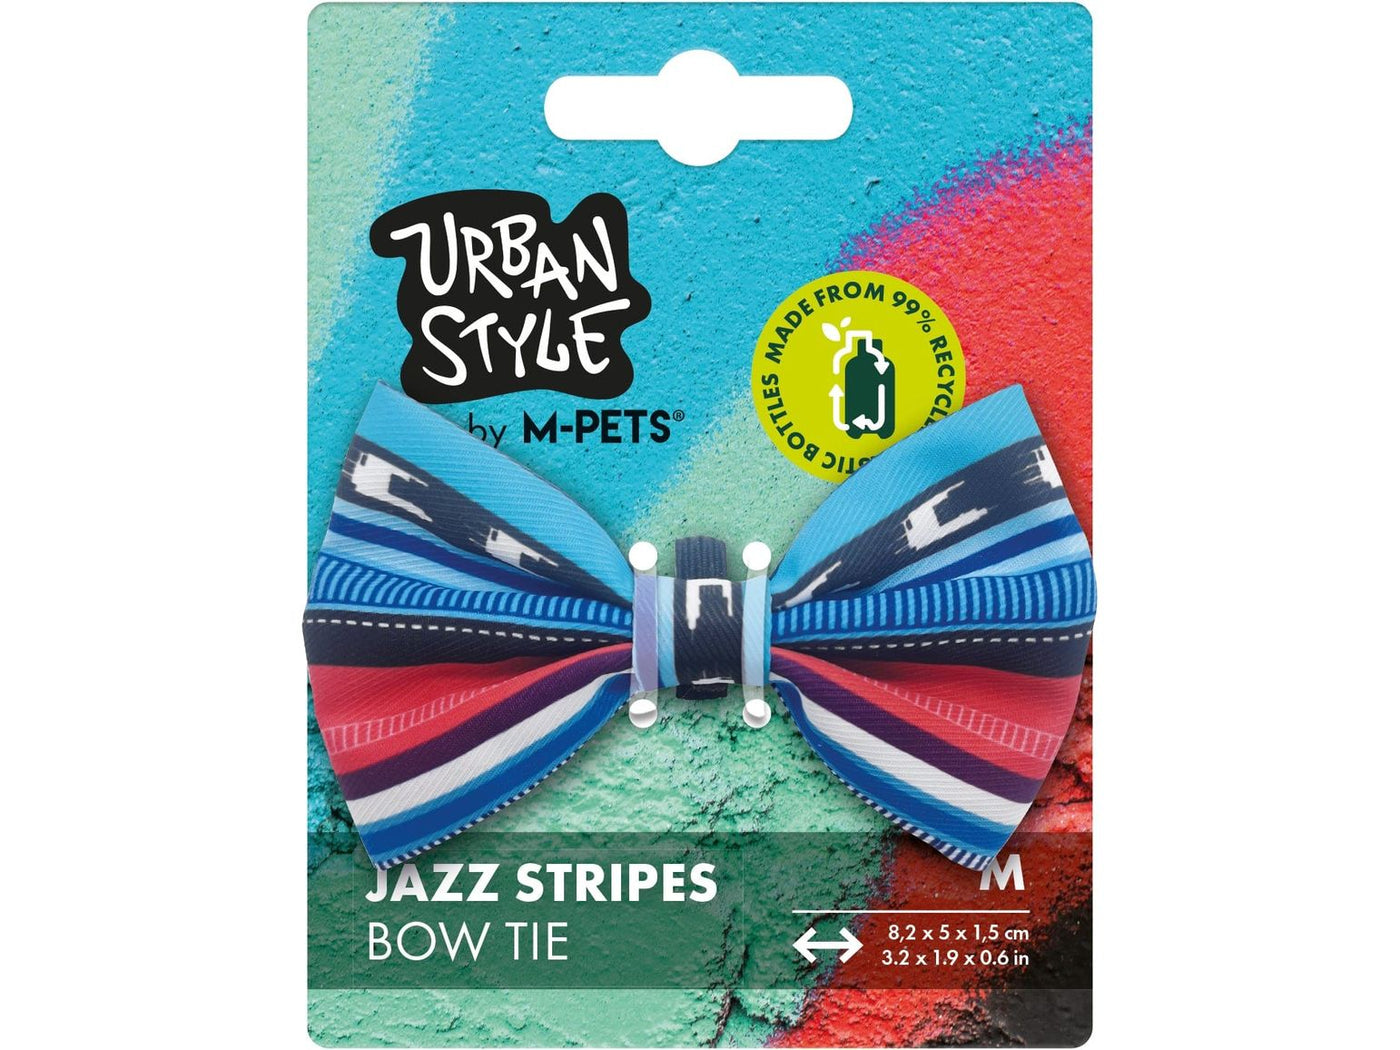 Urban Style Jazz Stripes Bow Tie